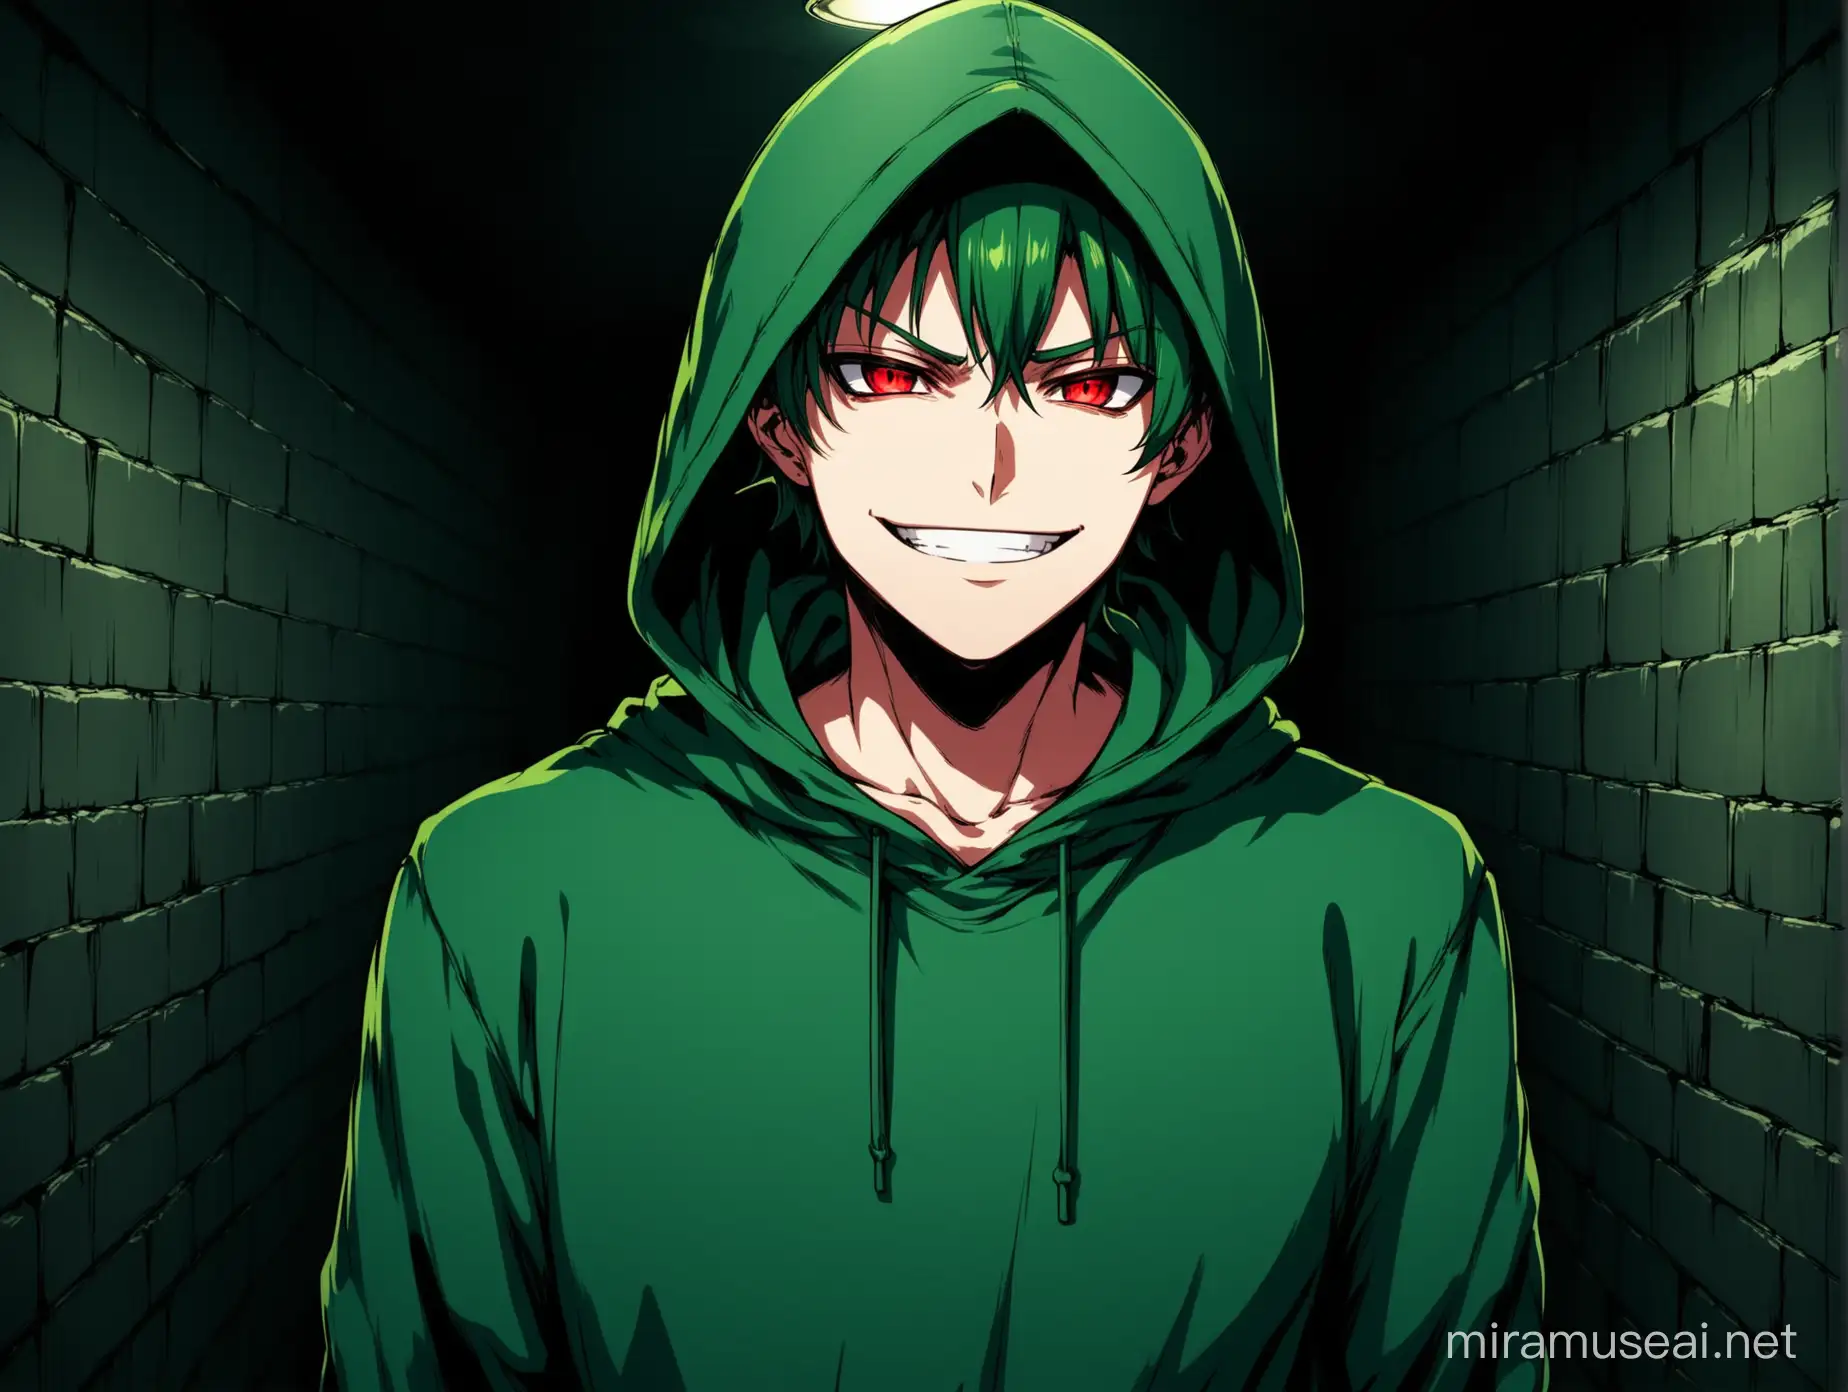 Sinister Anime Male Criminal in Dark Green Hoodie Smirking in Underground Lair